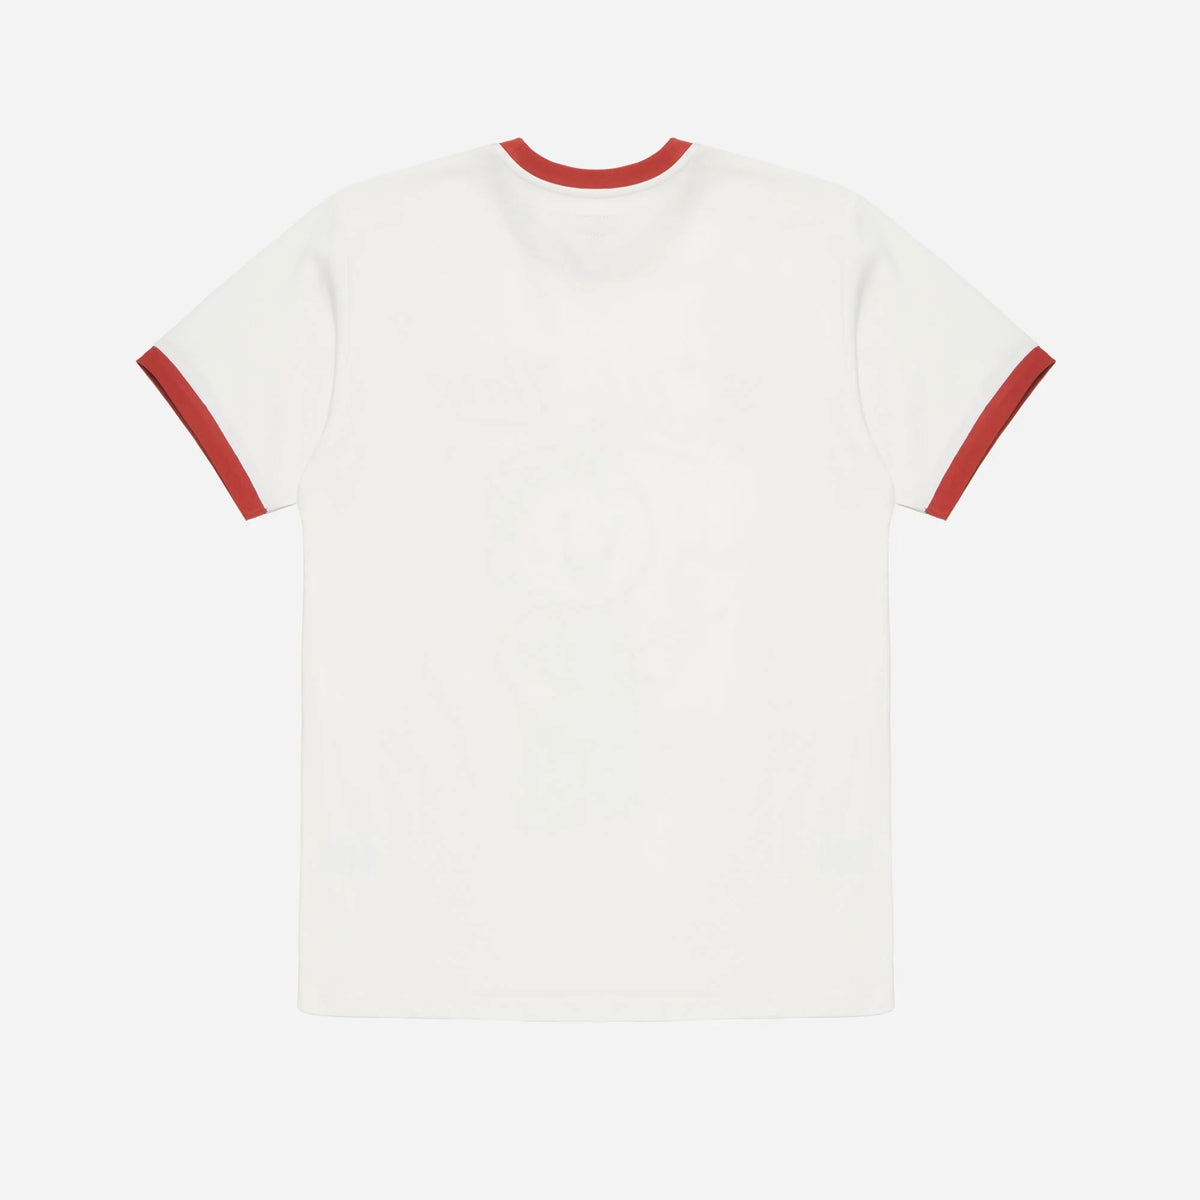 Dubbleware Pippin Apple Ringer T-Shirt